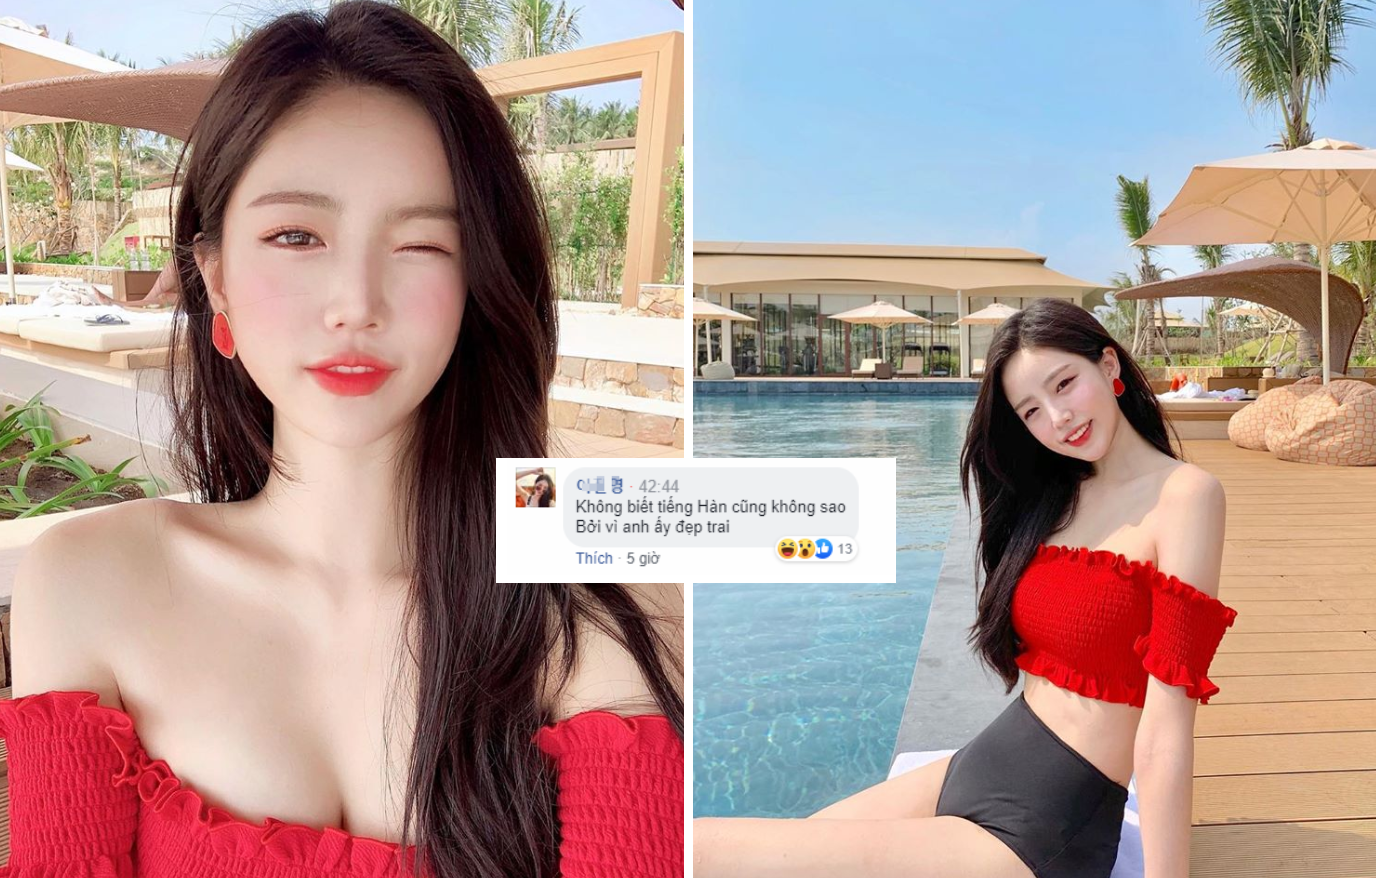 Ngỡ ngàng với nhan sắc hot-girl Hàn Quốc 'lạc' vào stream Bomman: 'Tôi không hiểu anh ấy nói gì, nhưng thôi đẹp trai là được'